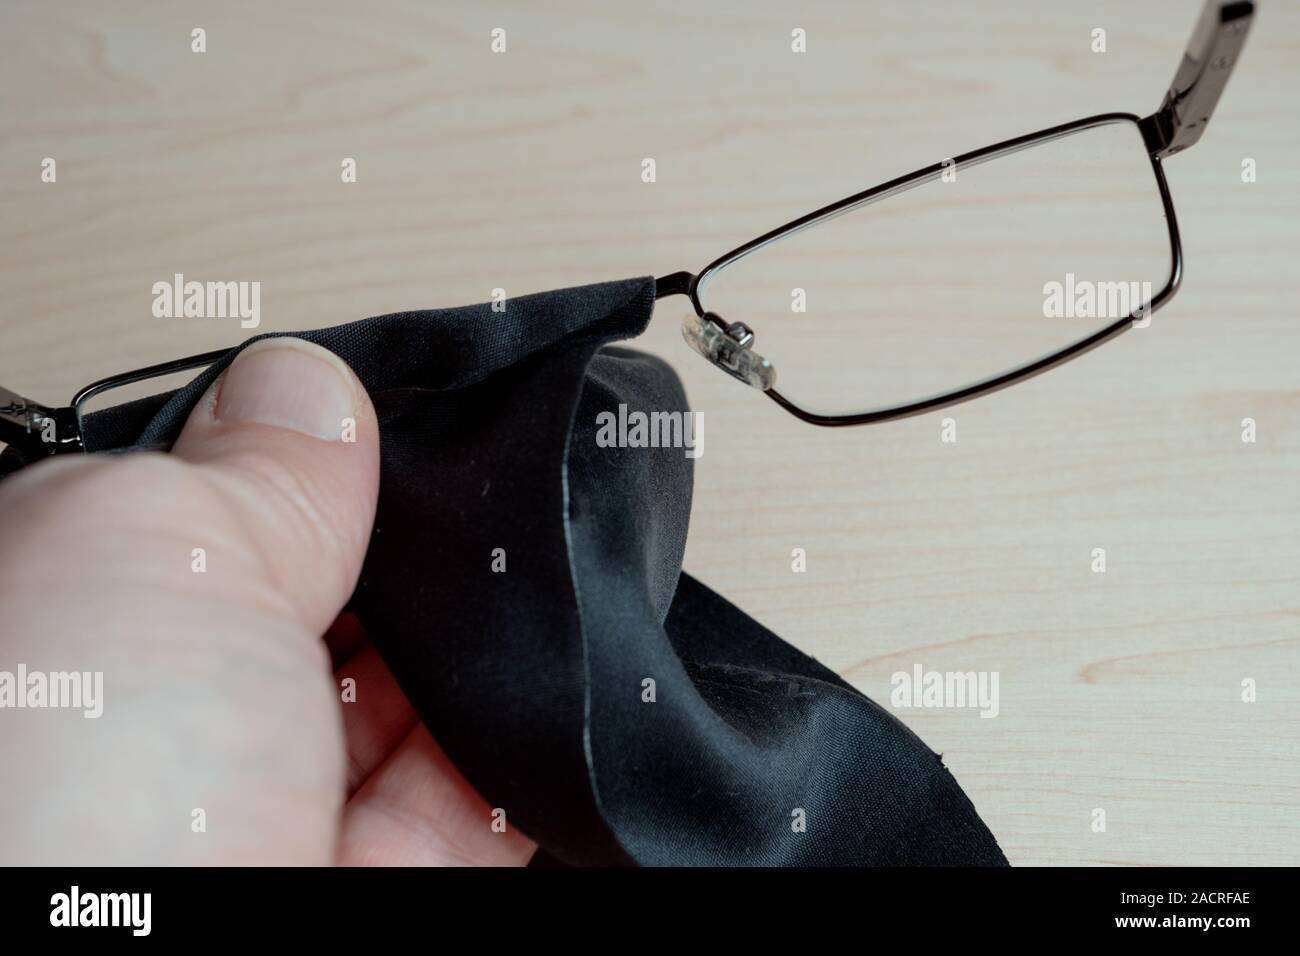 Le nettoyage des verres. Un homme essuie ses lunettes avec un chiffon.  Entreposage et les soins pour les lunettes. Selective focus Photo Stock -  Alamy